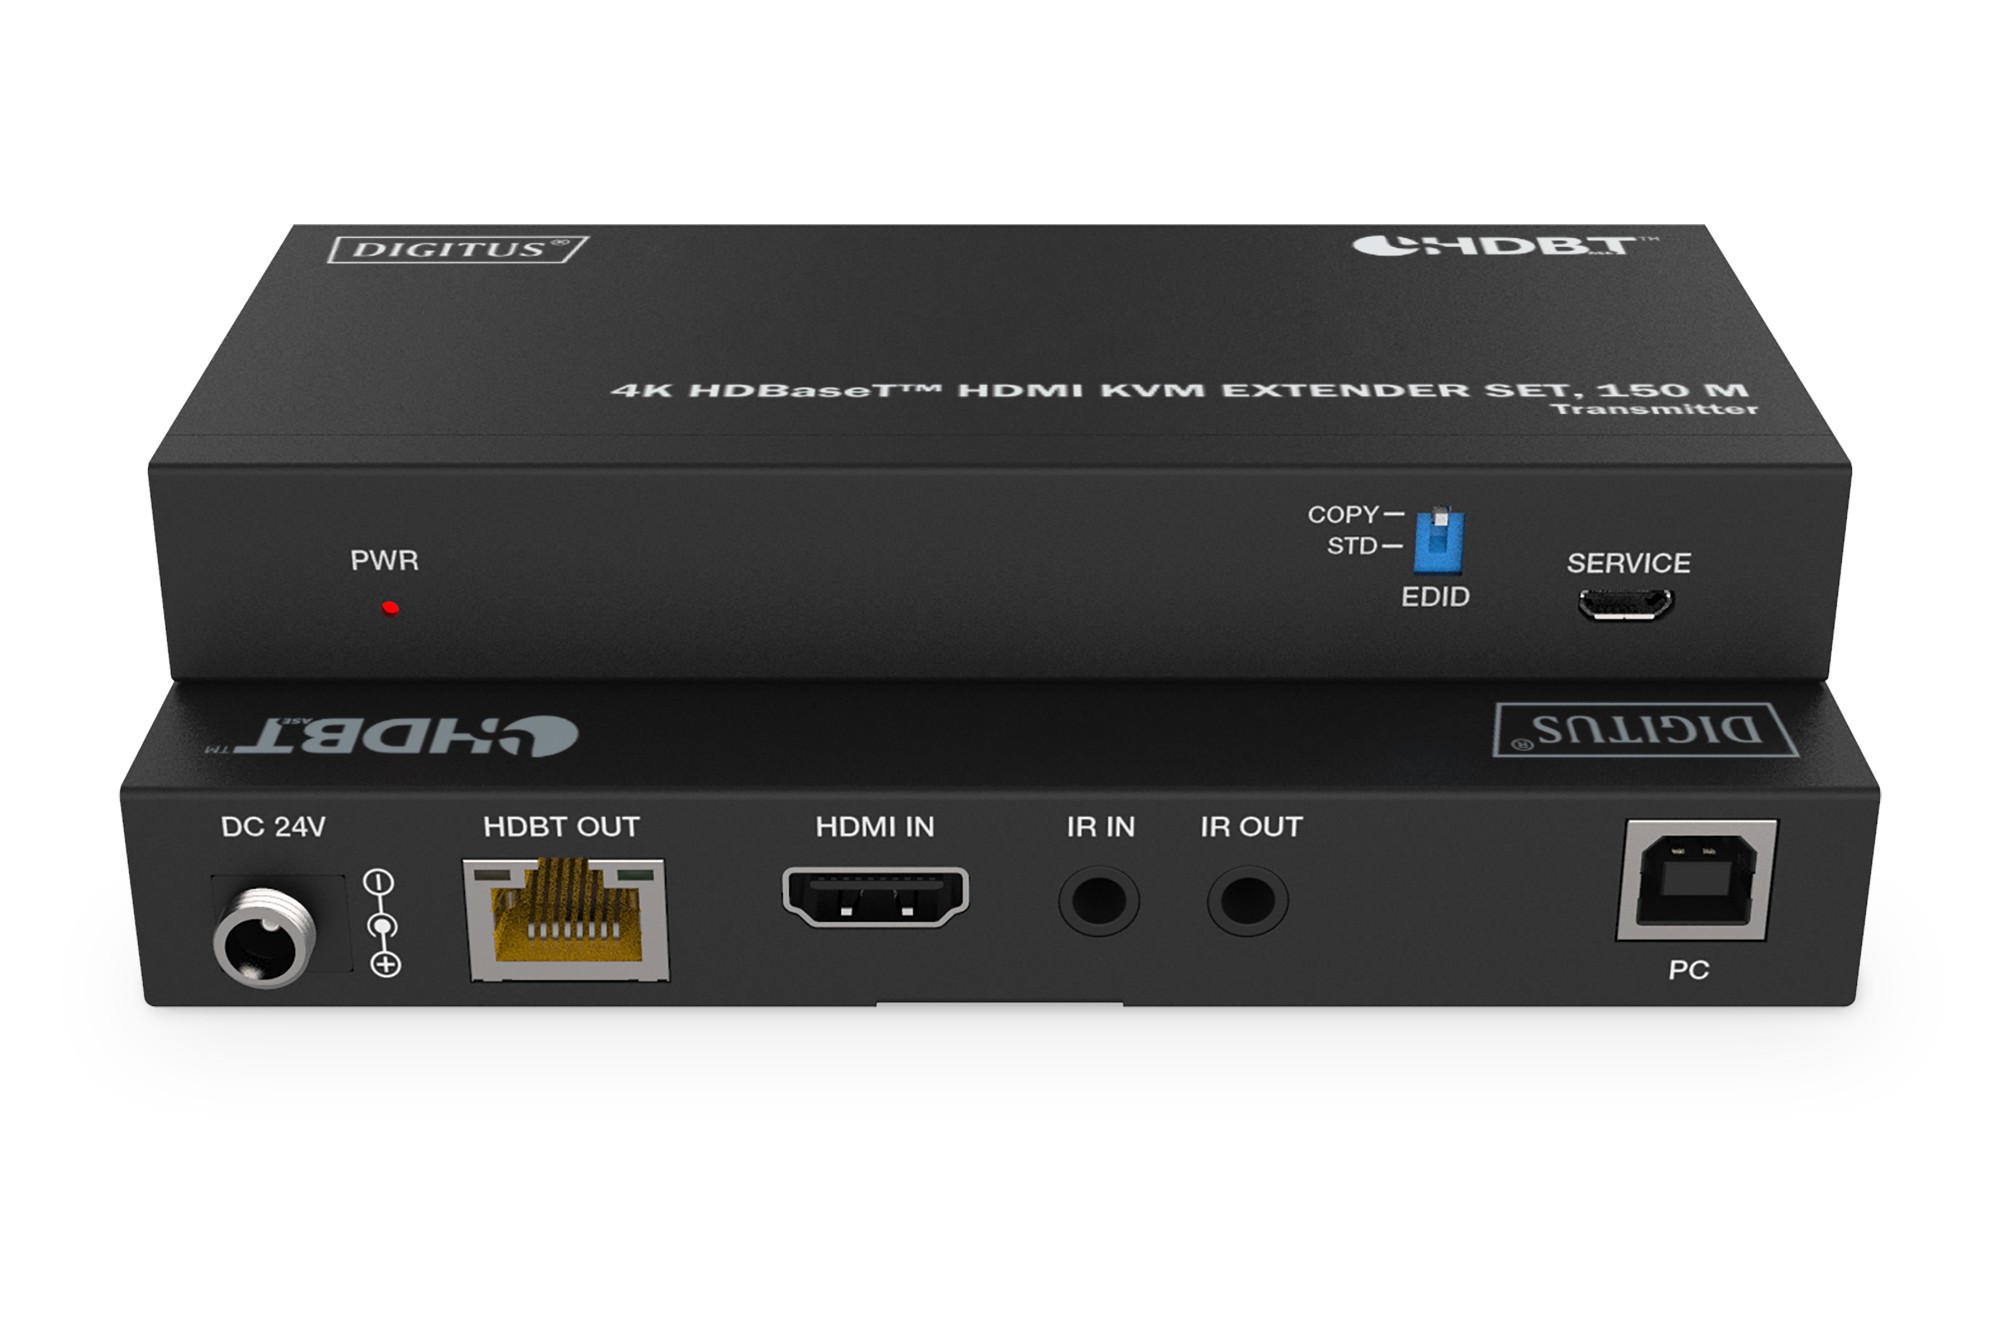 DS-55522  Kit extensor HDMI KVM 4K HDBaseT?, 150 m  4K/60Hz, USB 1.1, PoC, IR, negro  Digitus